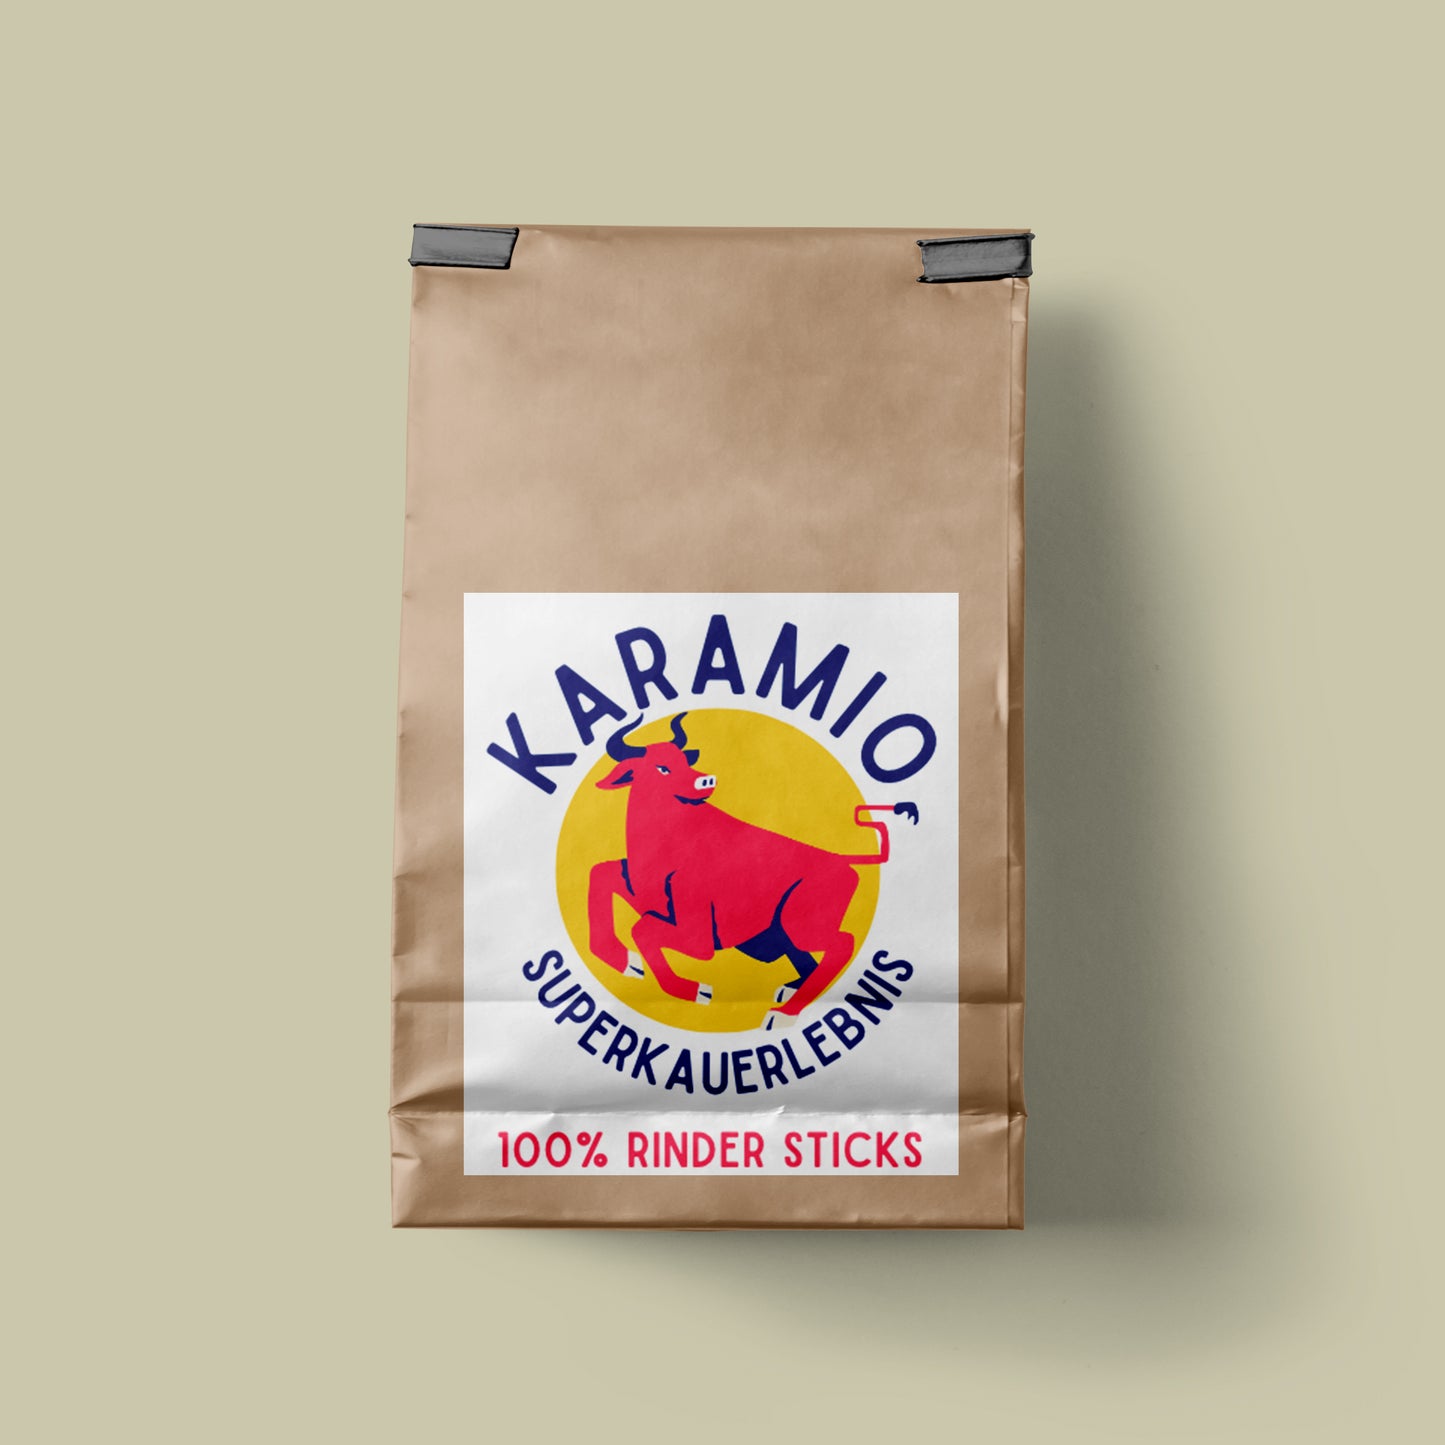 Karamio 100% Rinder-Sticks